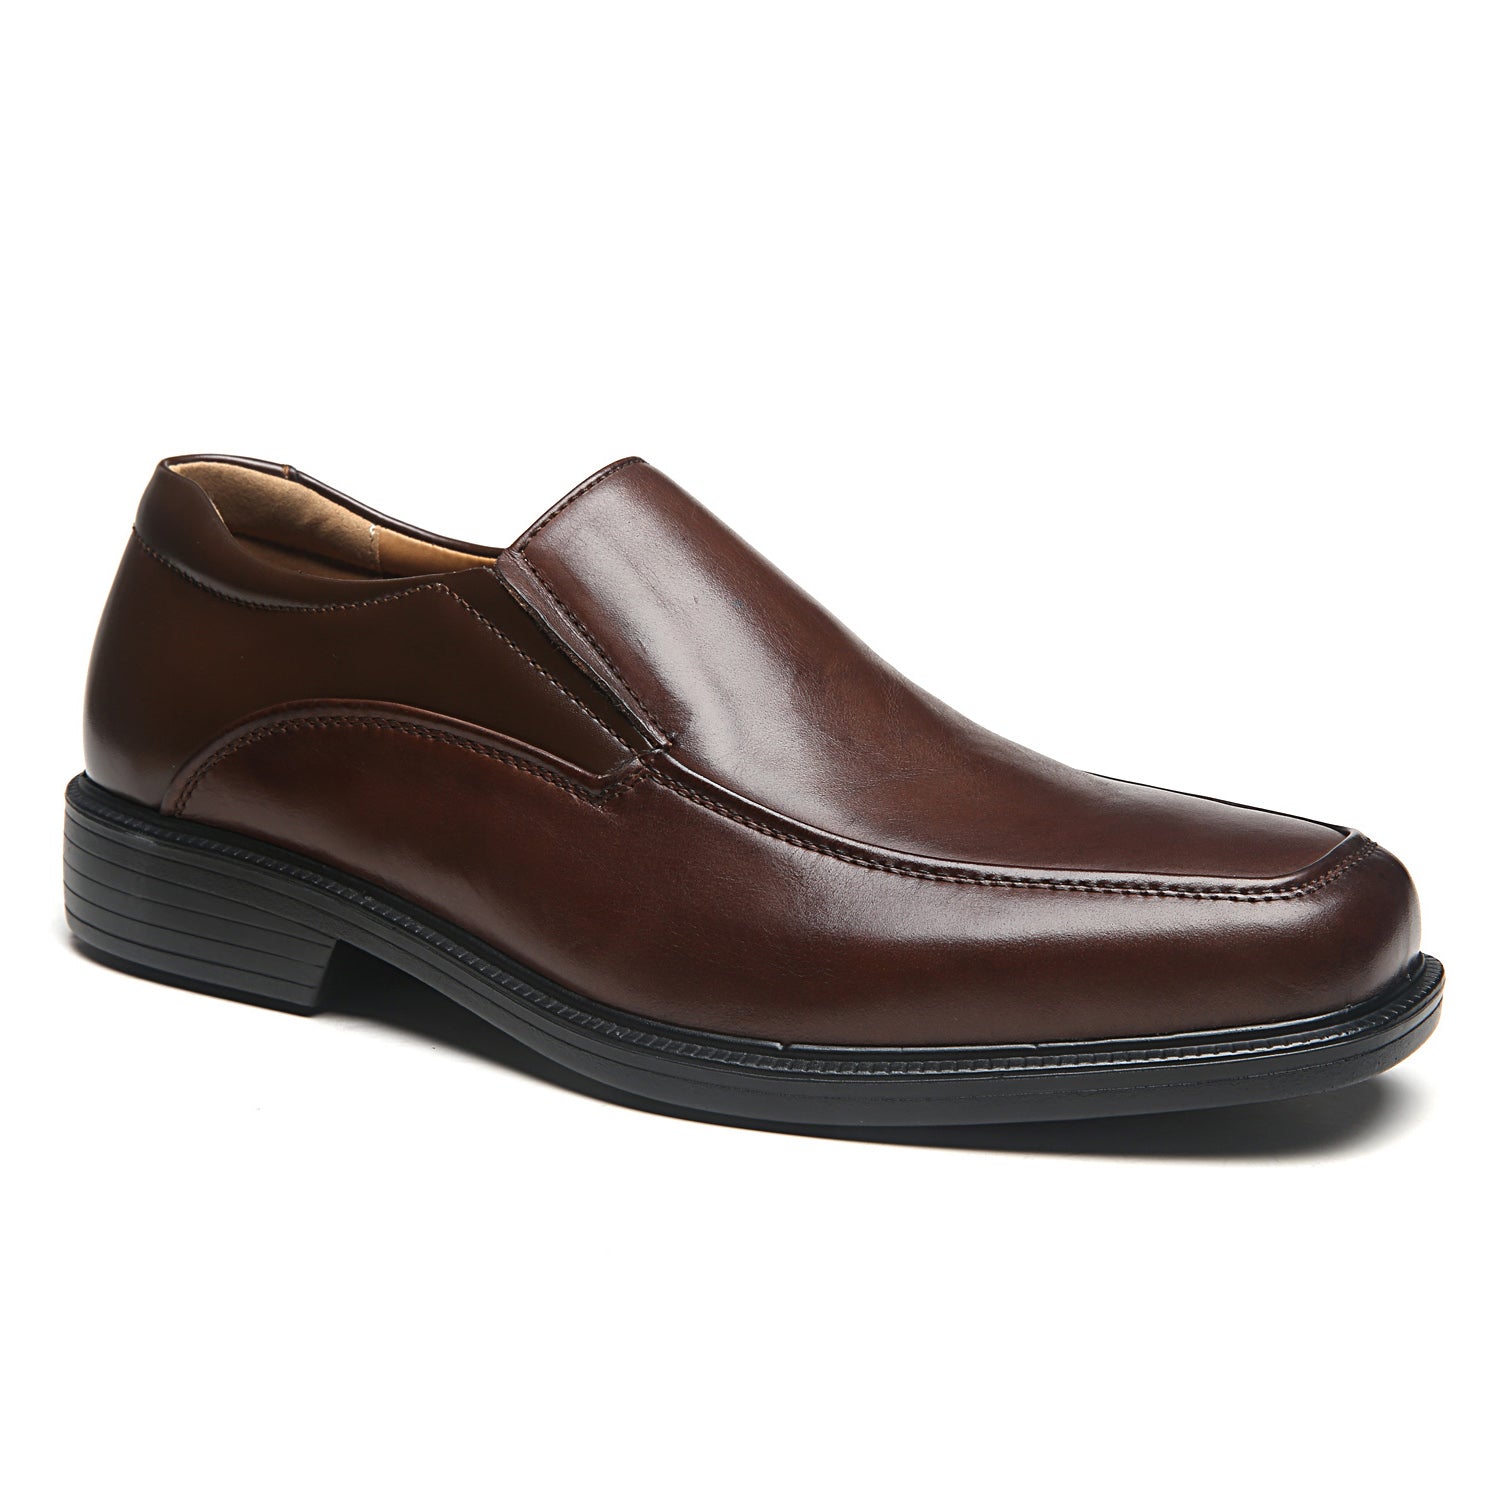 Men's Wide Width Oxford Shoes Wide-3-Brown | La Milano Mens Shoes